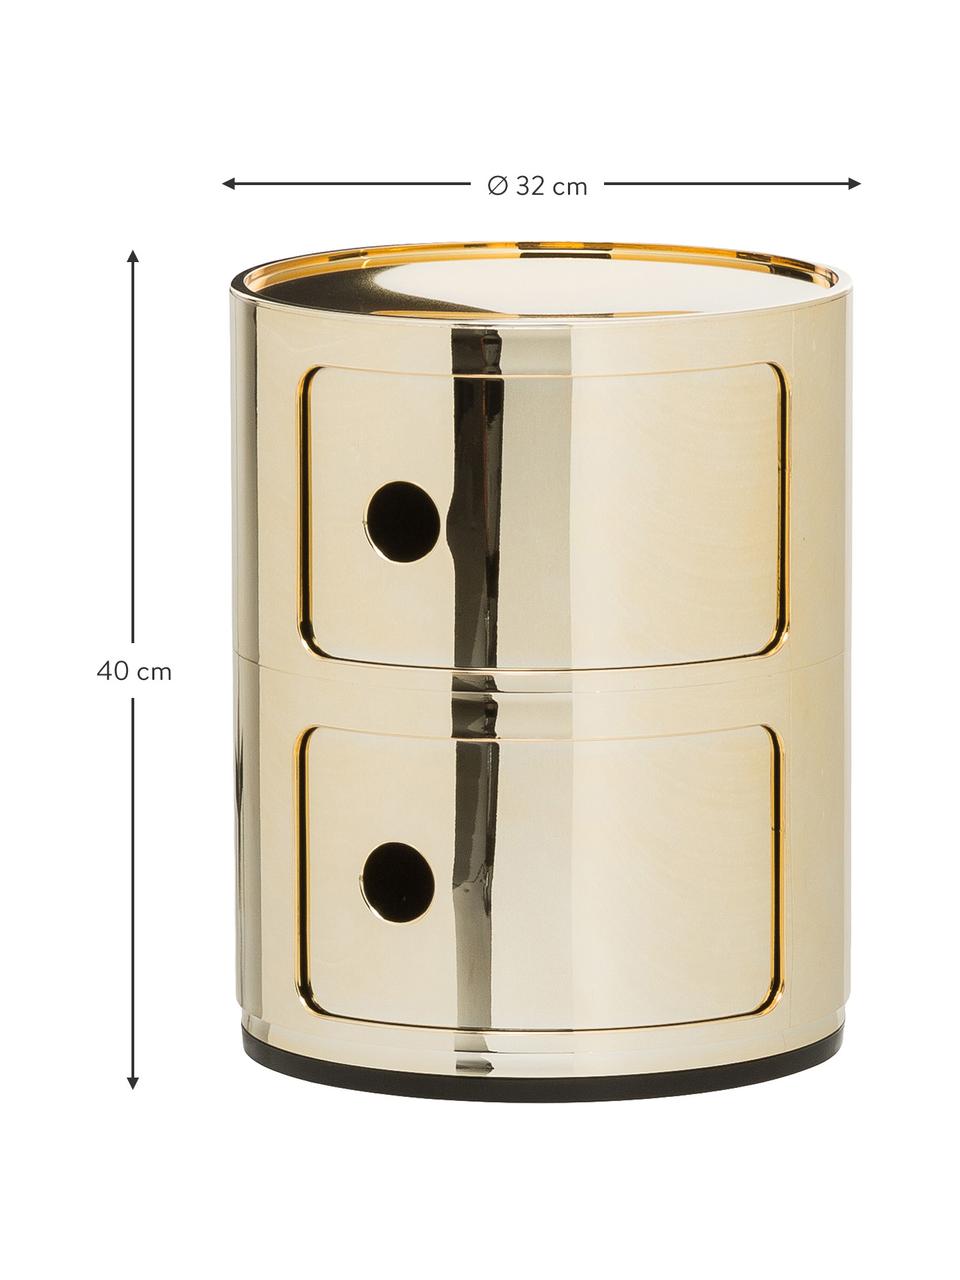 Design Container Componibili 2 Fächer, Kunststoff, metallicbeschichtet, Goldfarben, Ø 32 x H 40 cm